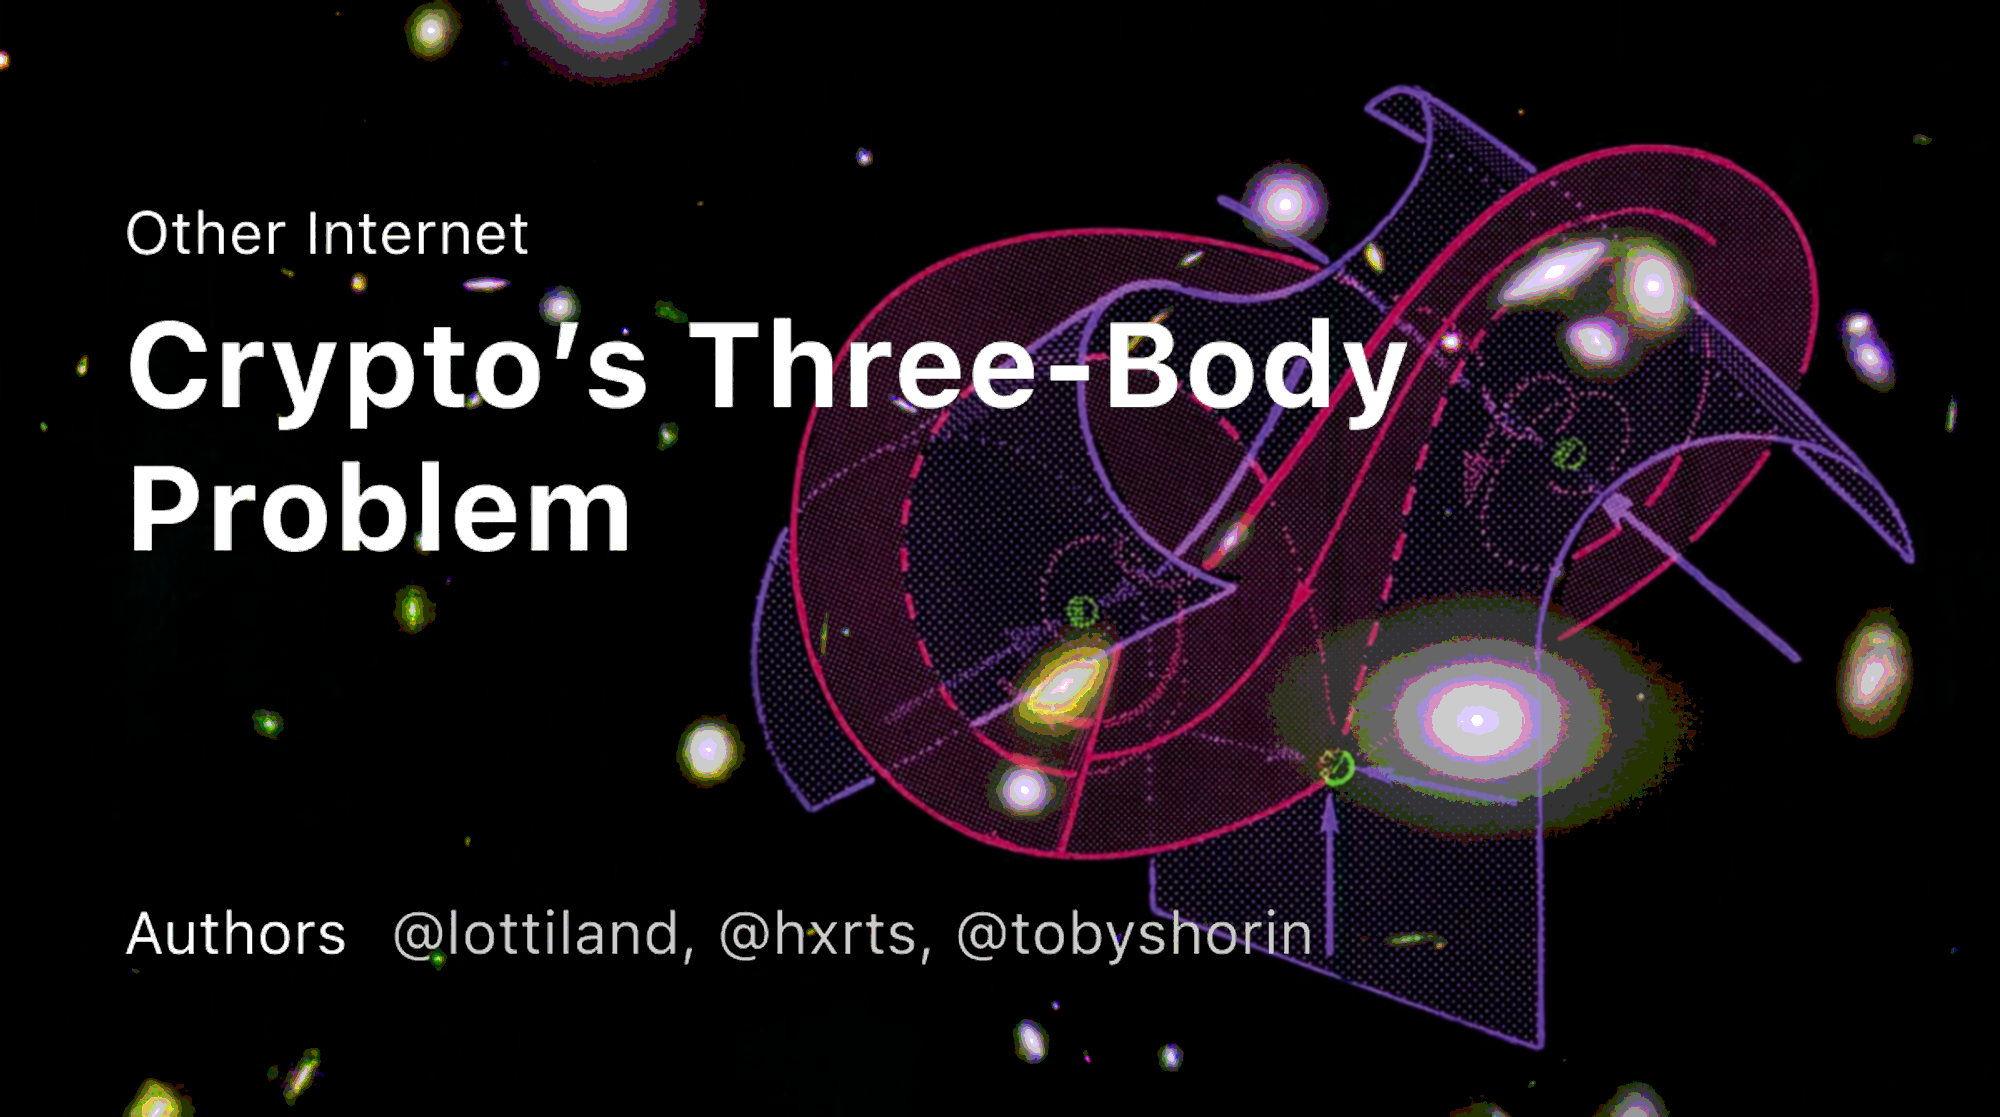 Thumbnail of Crypto's Three Body Problem